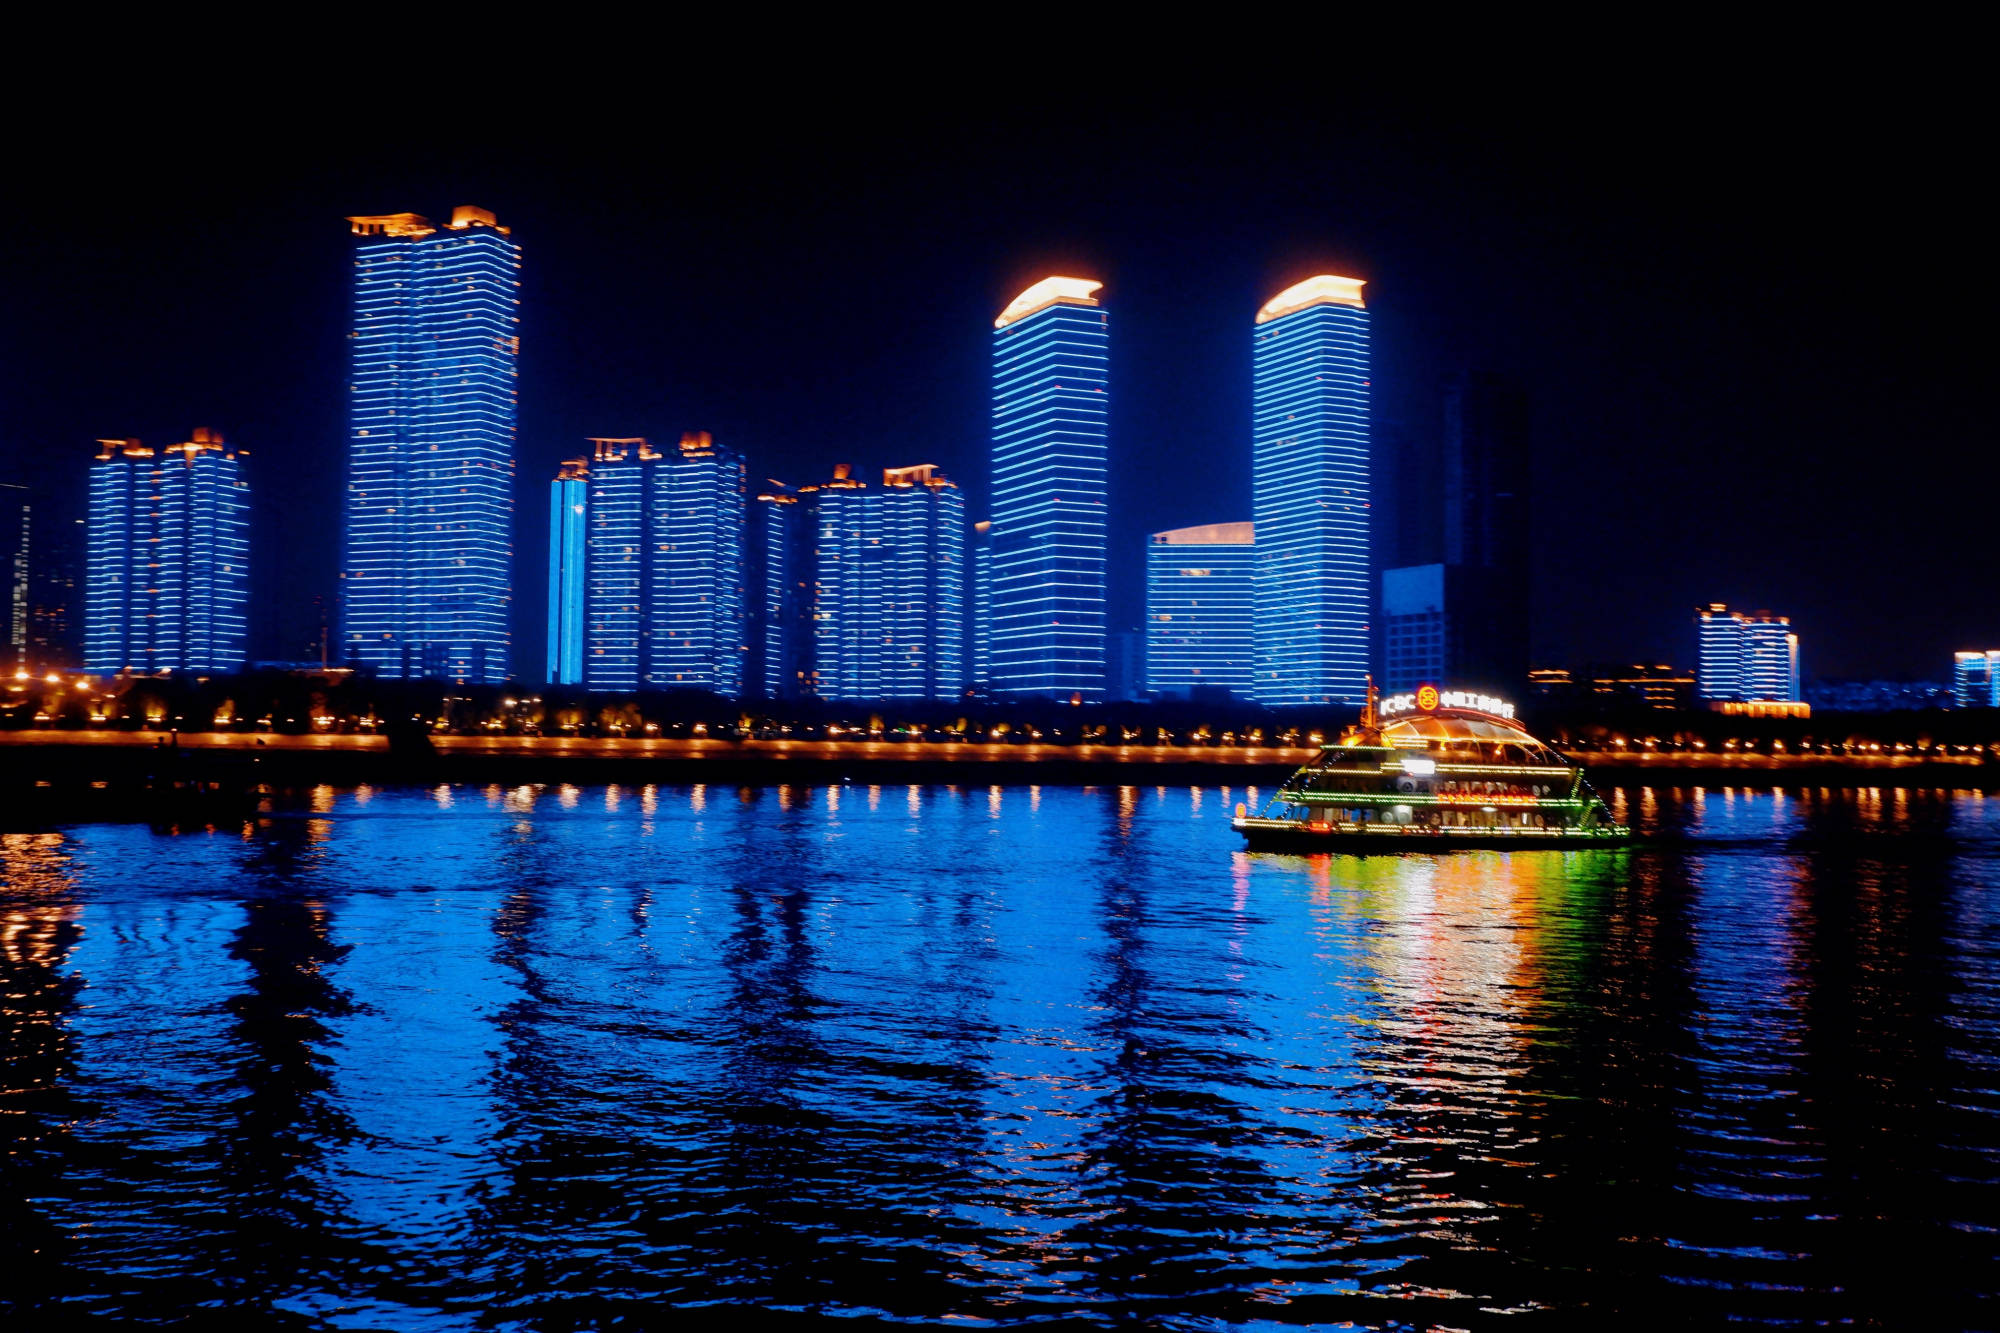 武汉成为全国十大迷人夜景城市,120元乘坐游轮,欣赏长江夜景